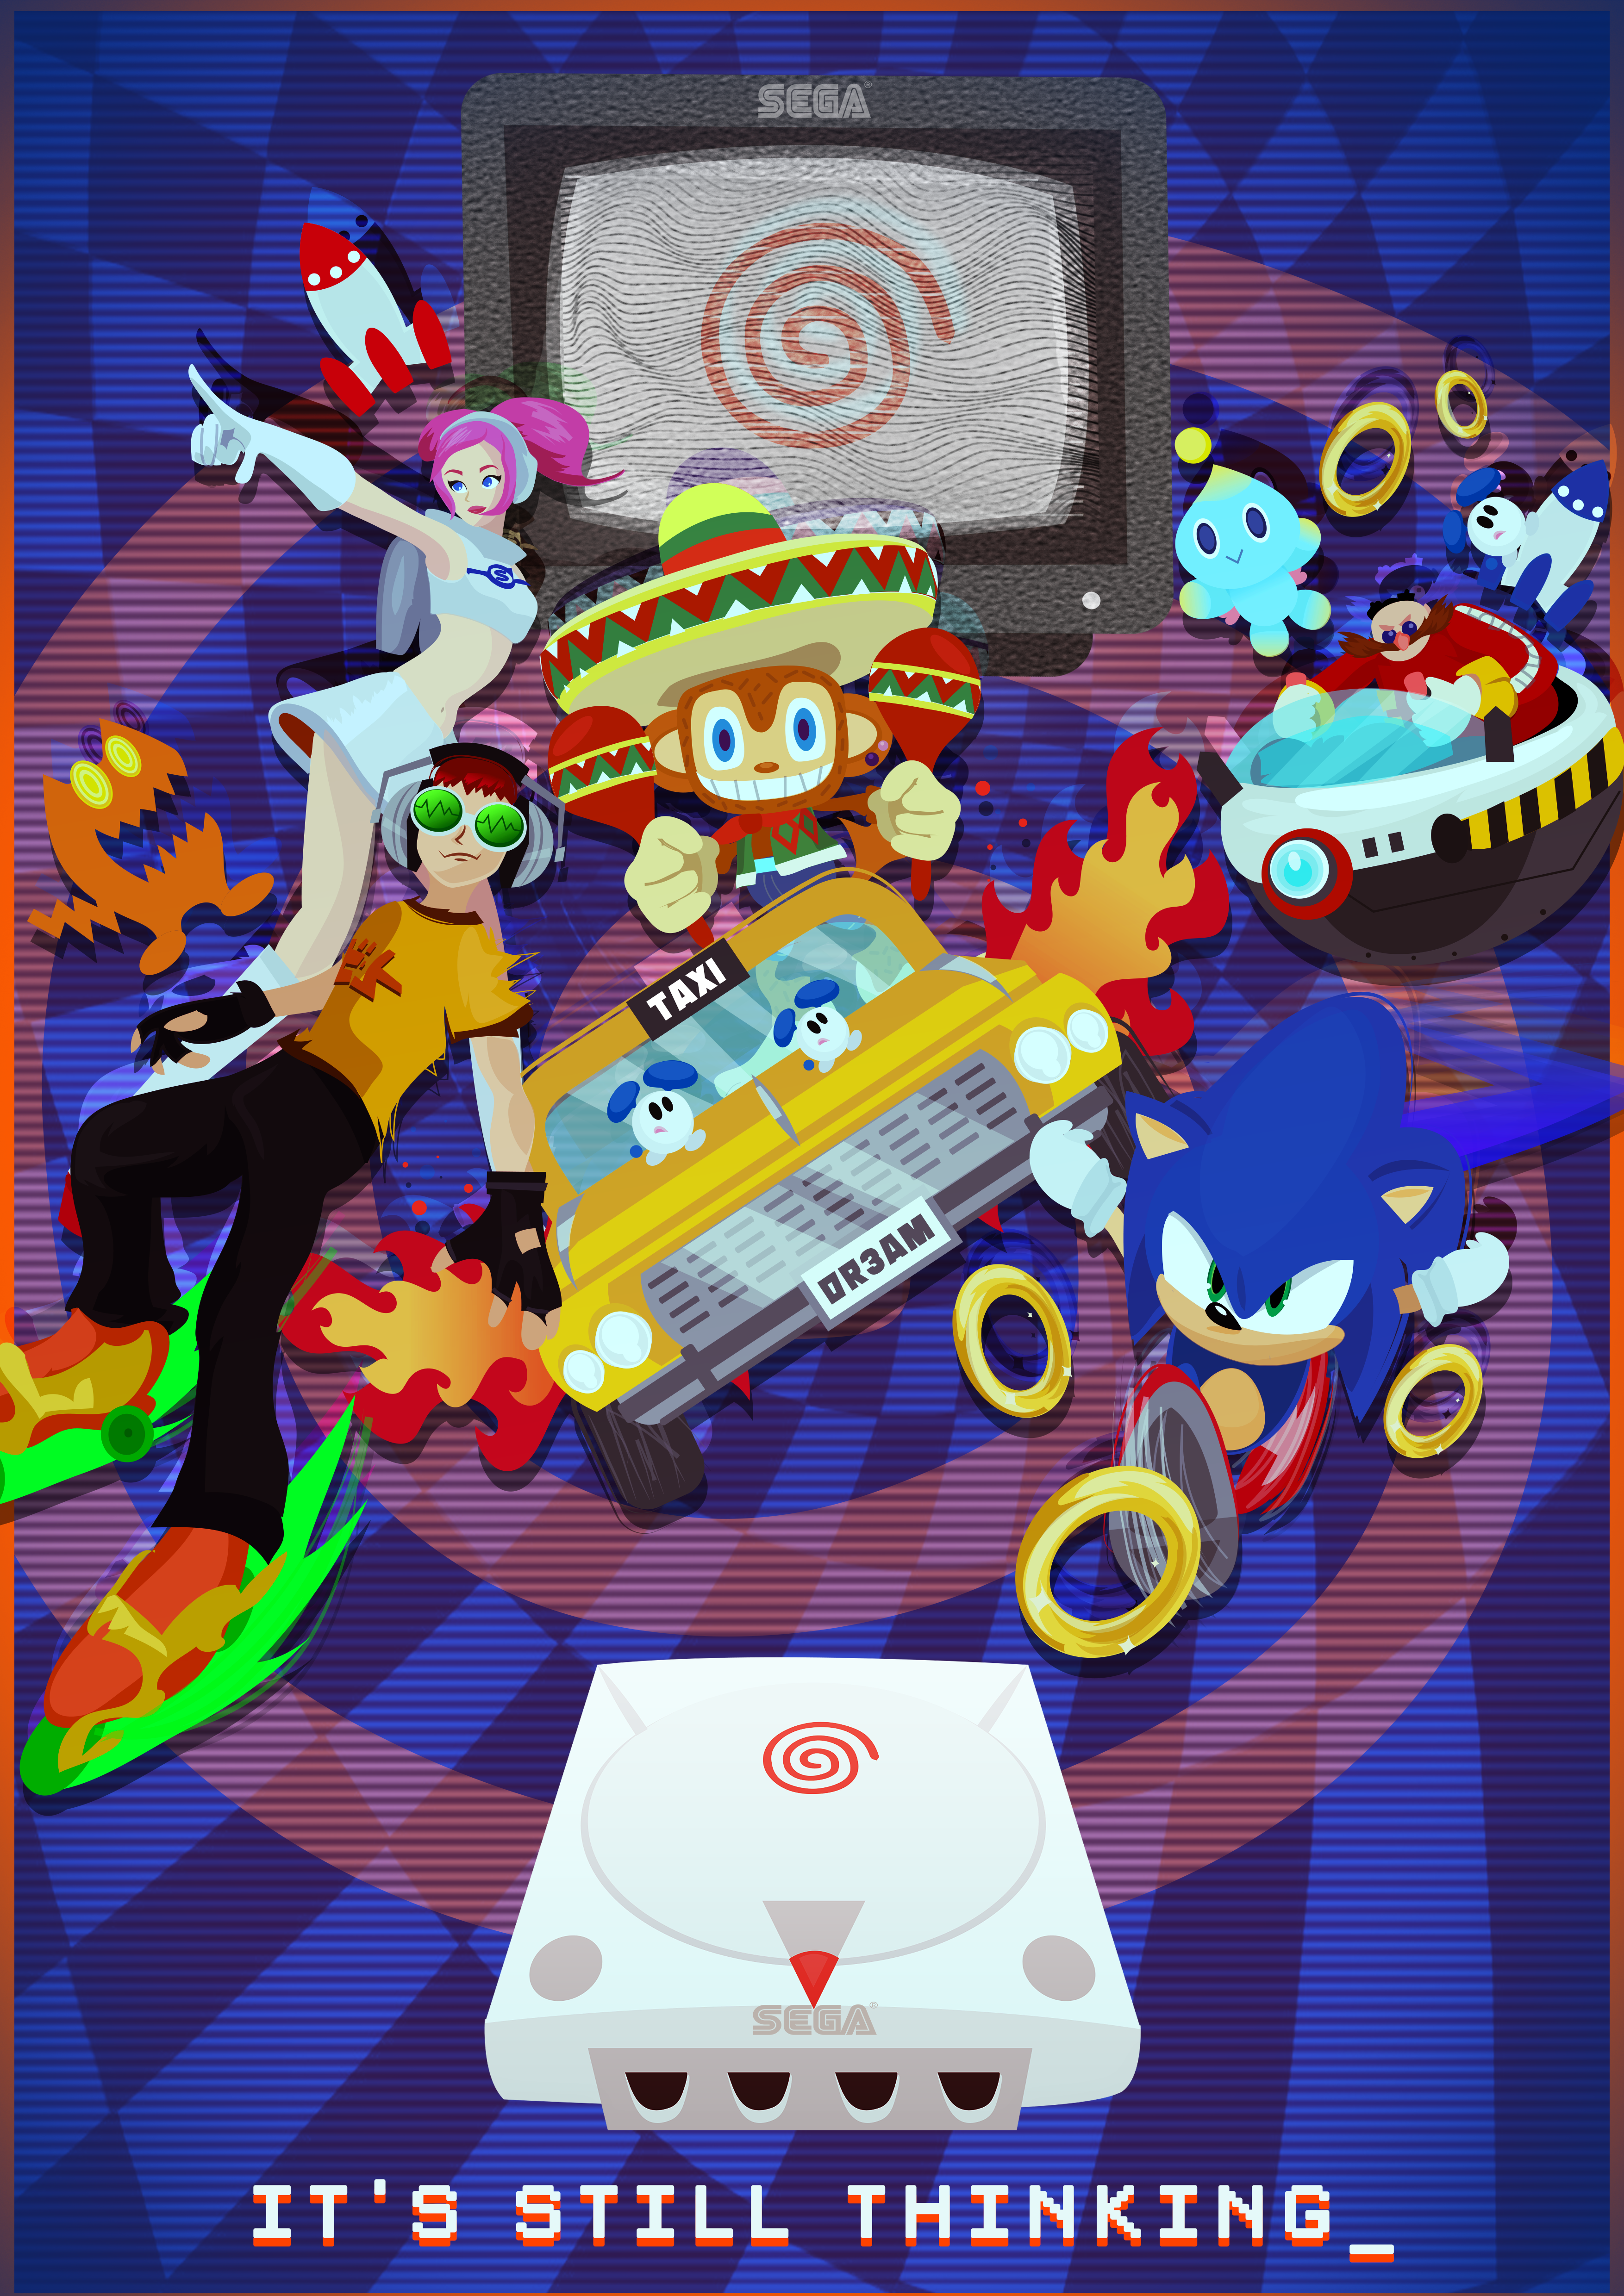 SEGA Dreamcast”. Sega dreamcast, Geeky wallpaper, Sega